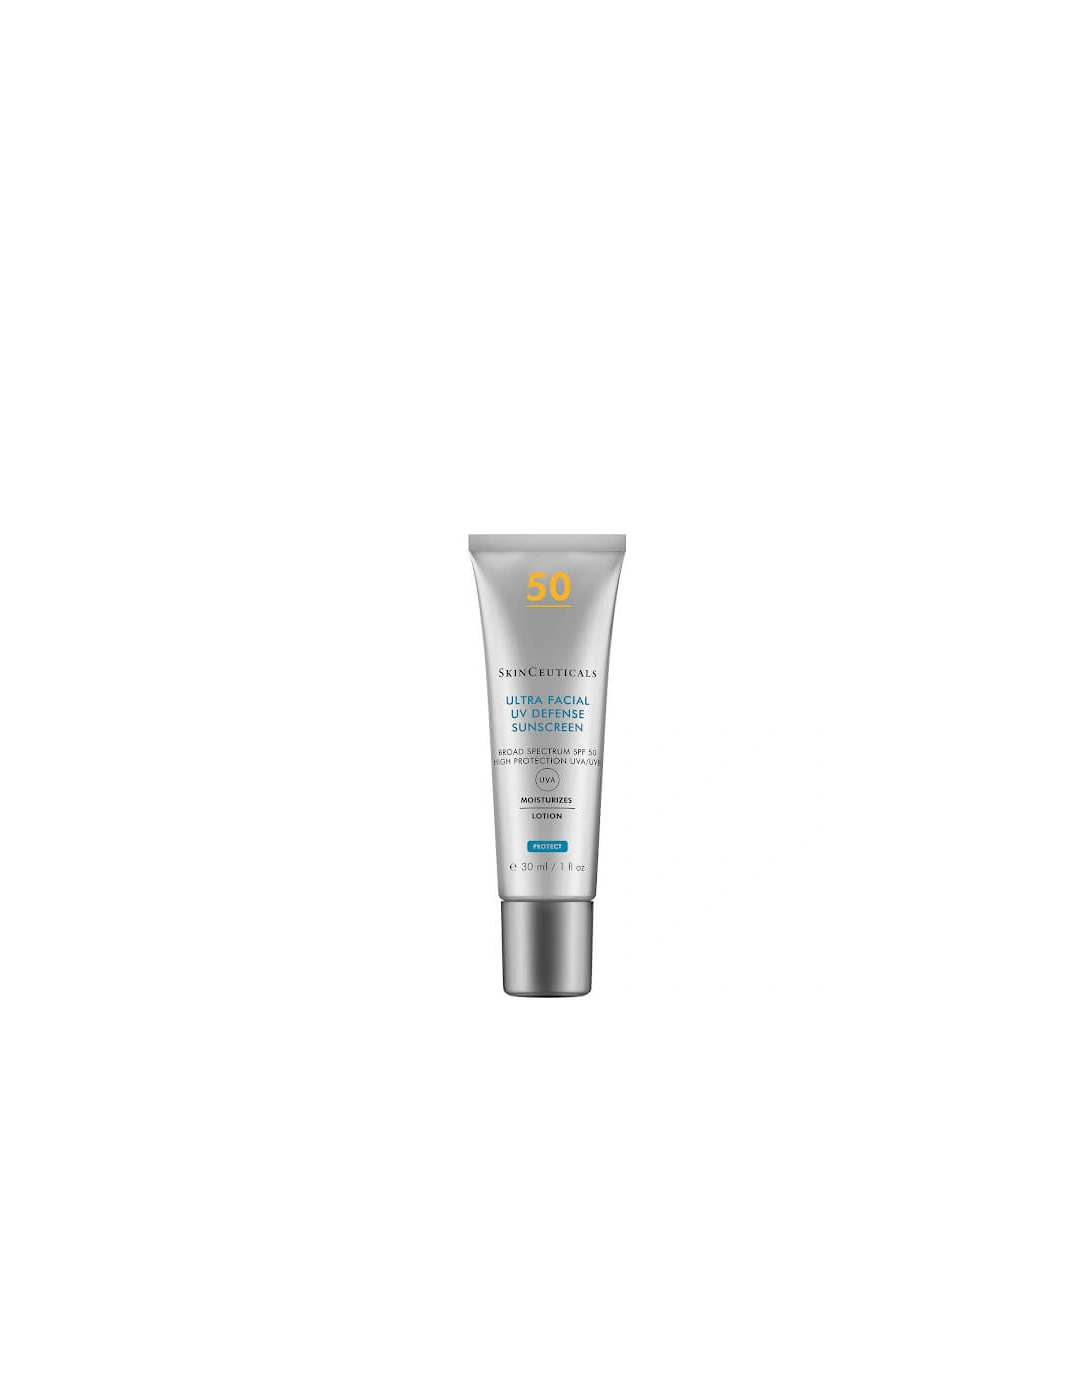 Ultra Facial UV Defense SPF50 Sunscreen Protection 30ml, 2 of 1